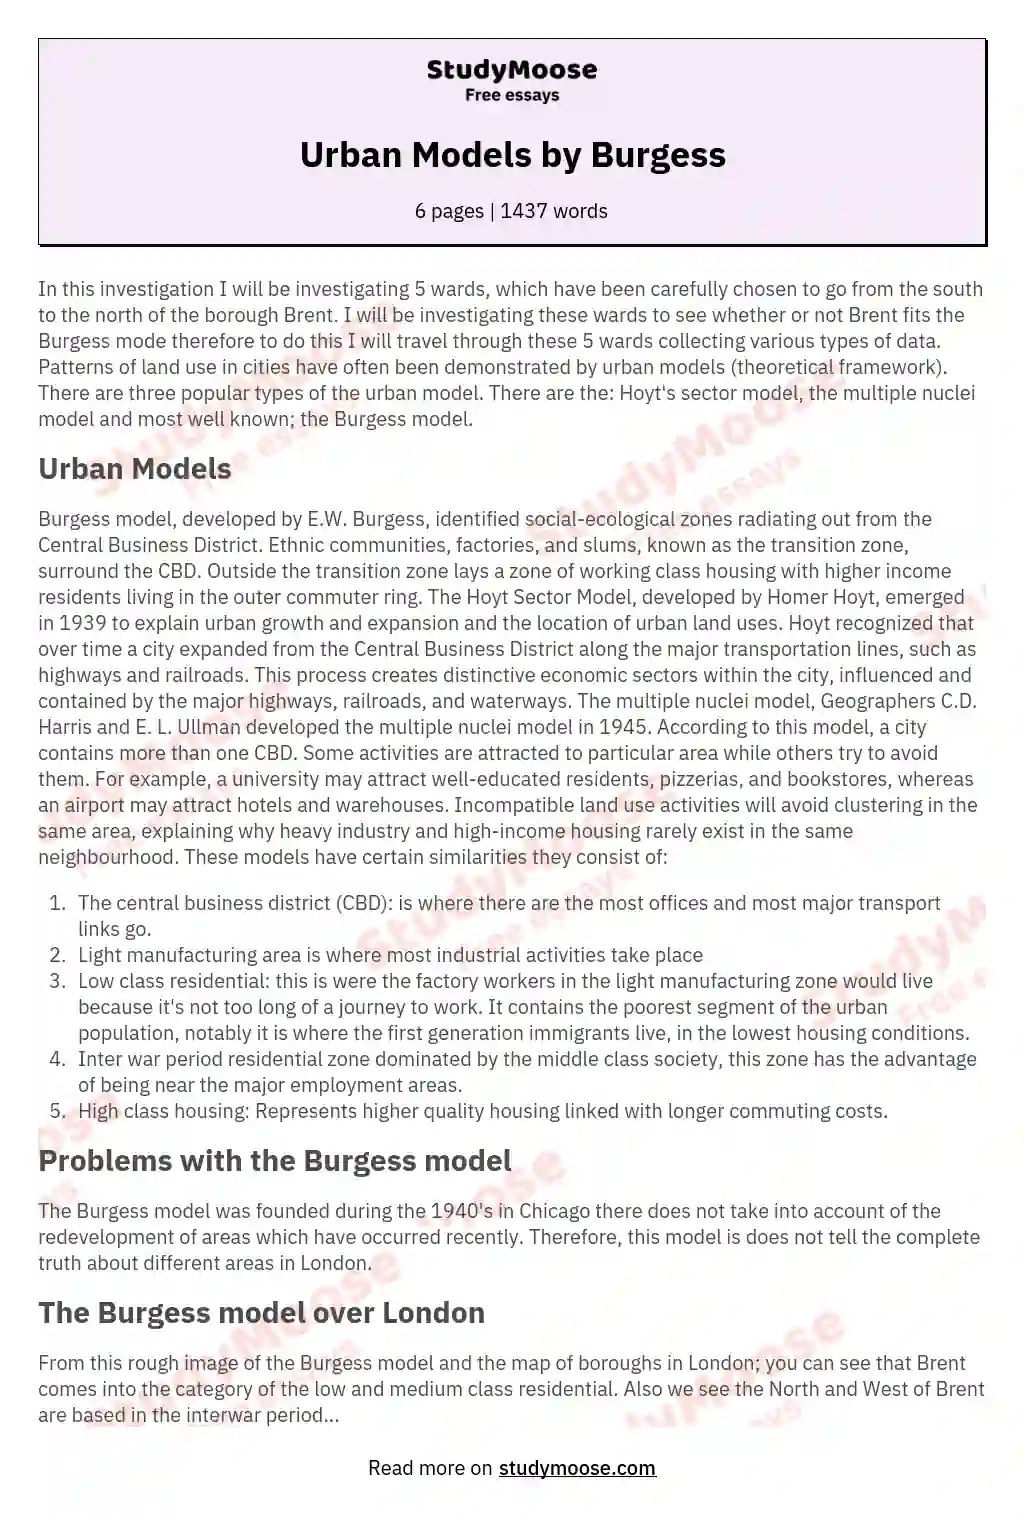 Urban Models by Burgess essay